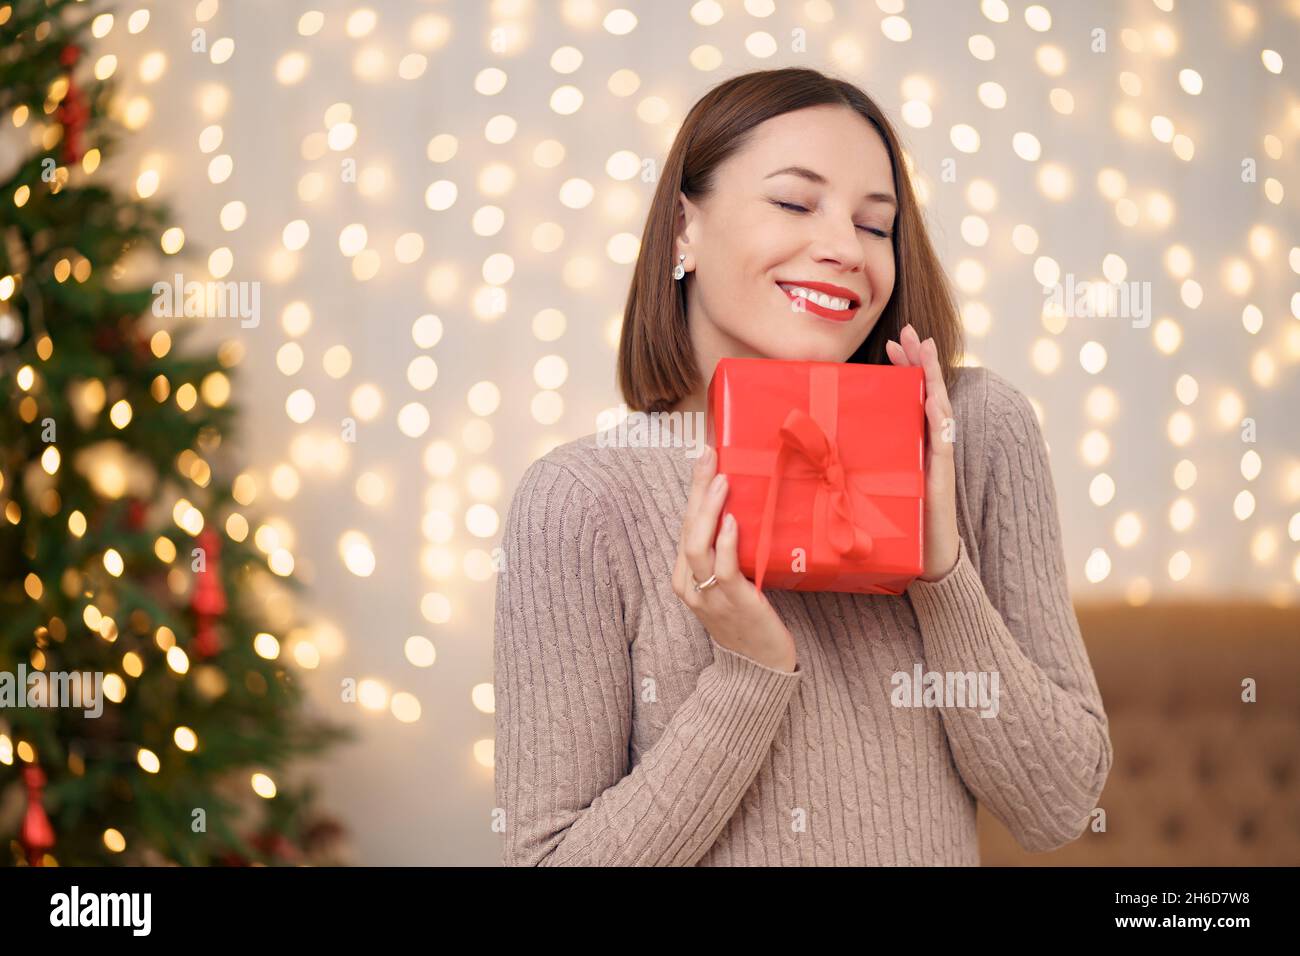 Portrait de la jeune femme heureuse lèvres rouges est si hapyy pour obtenir boîte cadeau enveloppée.Gros plan la femme satisfaite a reçu la boîte actuelle.Arrière-plan des lumières de Noël festives. Banque D'Images